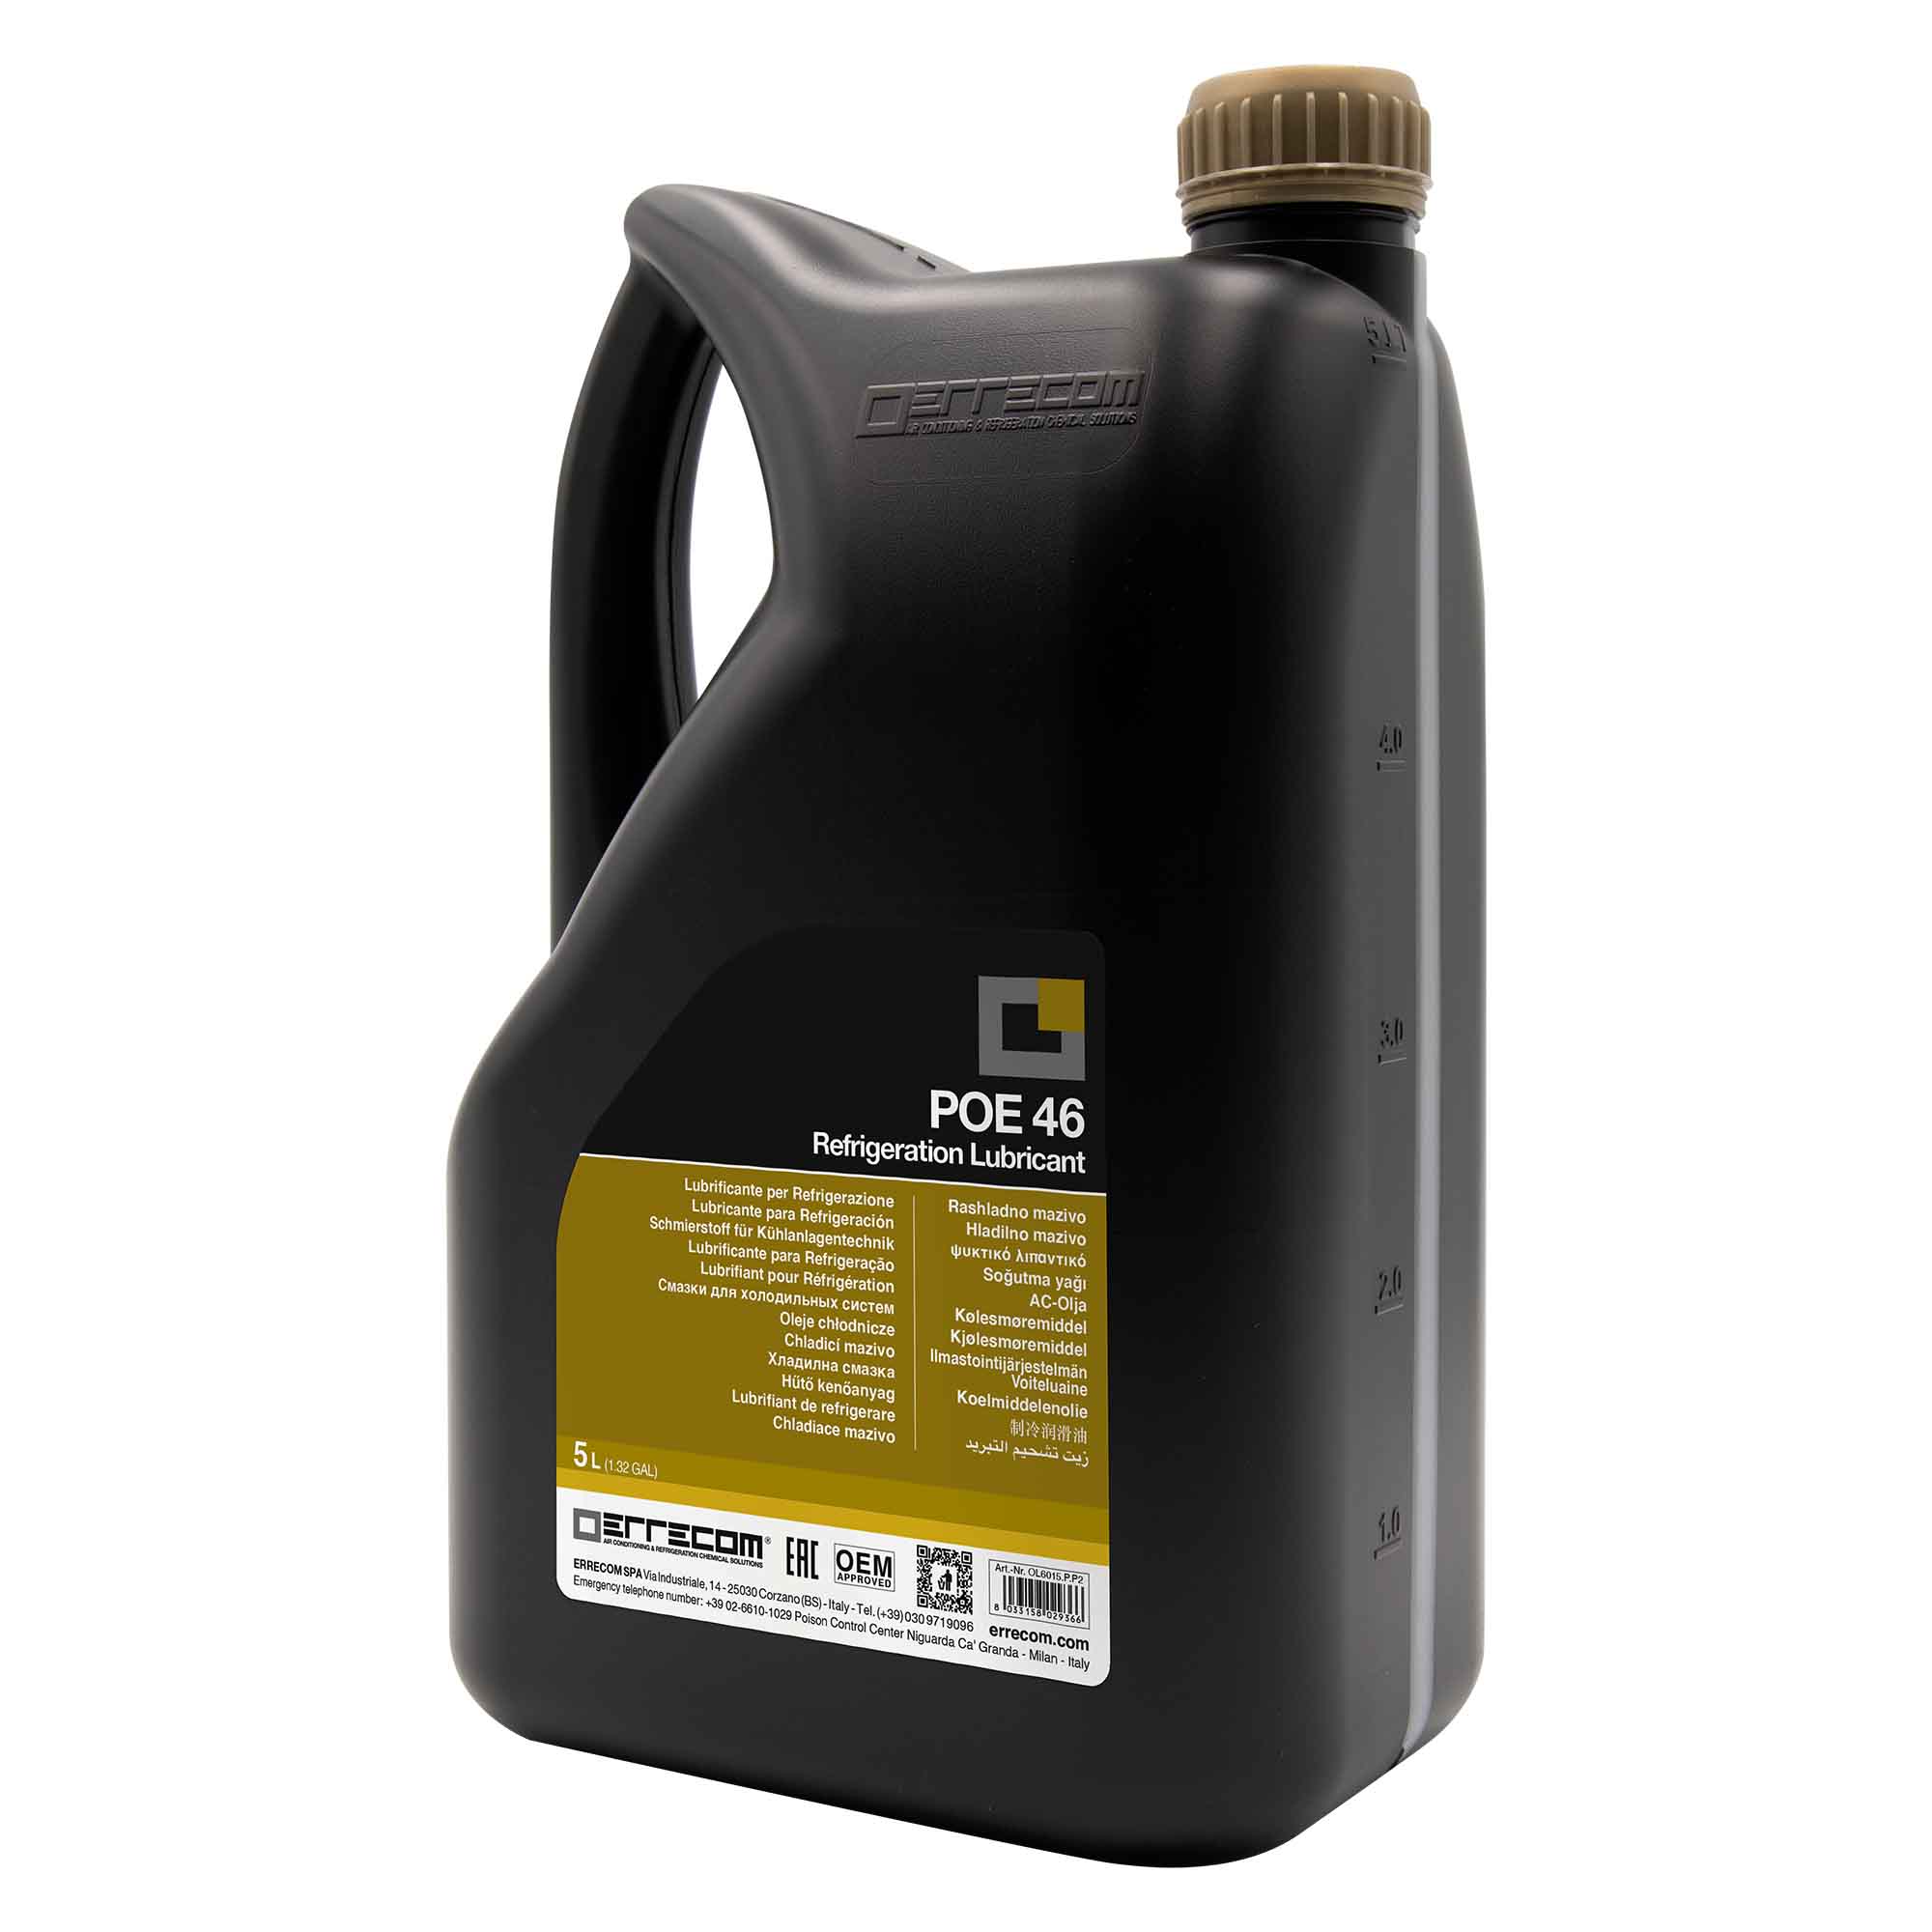 2 x Olio lubrificante R&AC Polyol Estere (POE) Errecom 46 - Tanica in Plastica da 5 lt. - Confezione n° 2 pz. (totale 10 litri) - Foto 1 